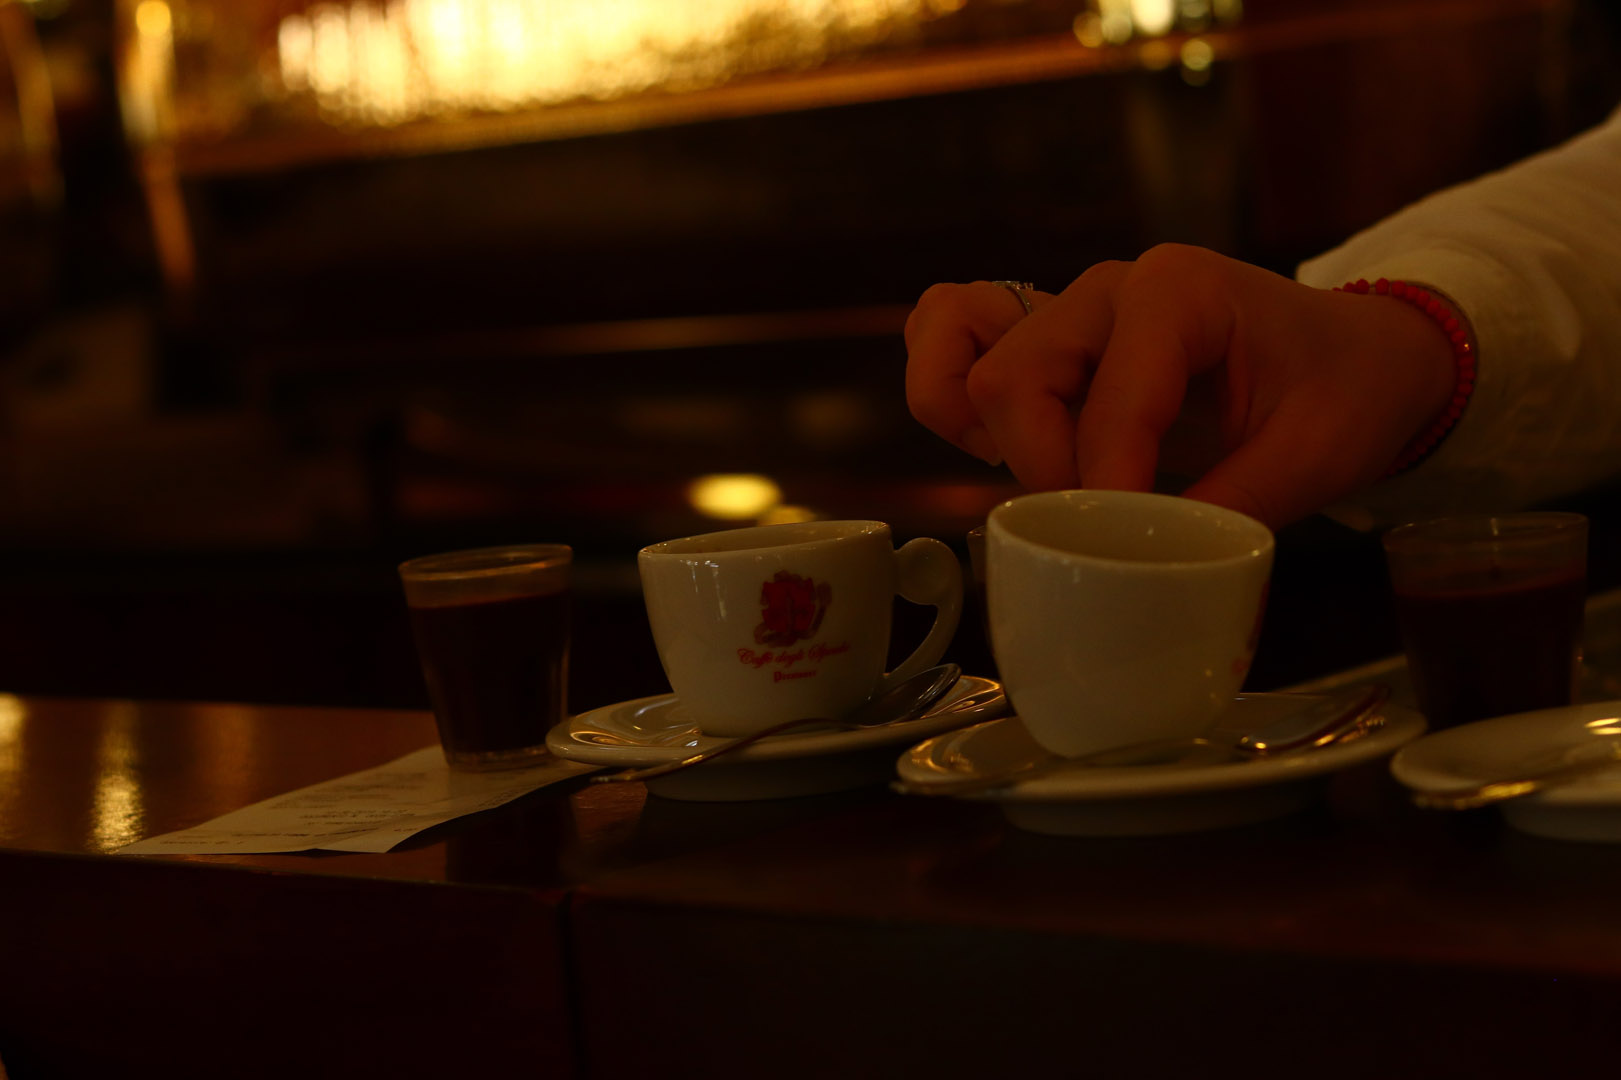 Il momento del caffè triestino, Trieste, Italia, 2019